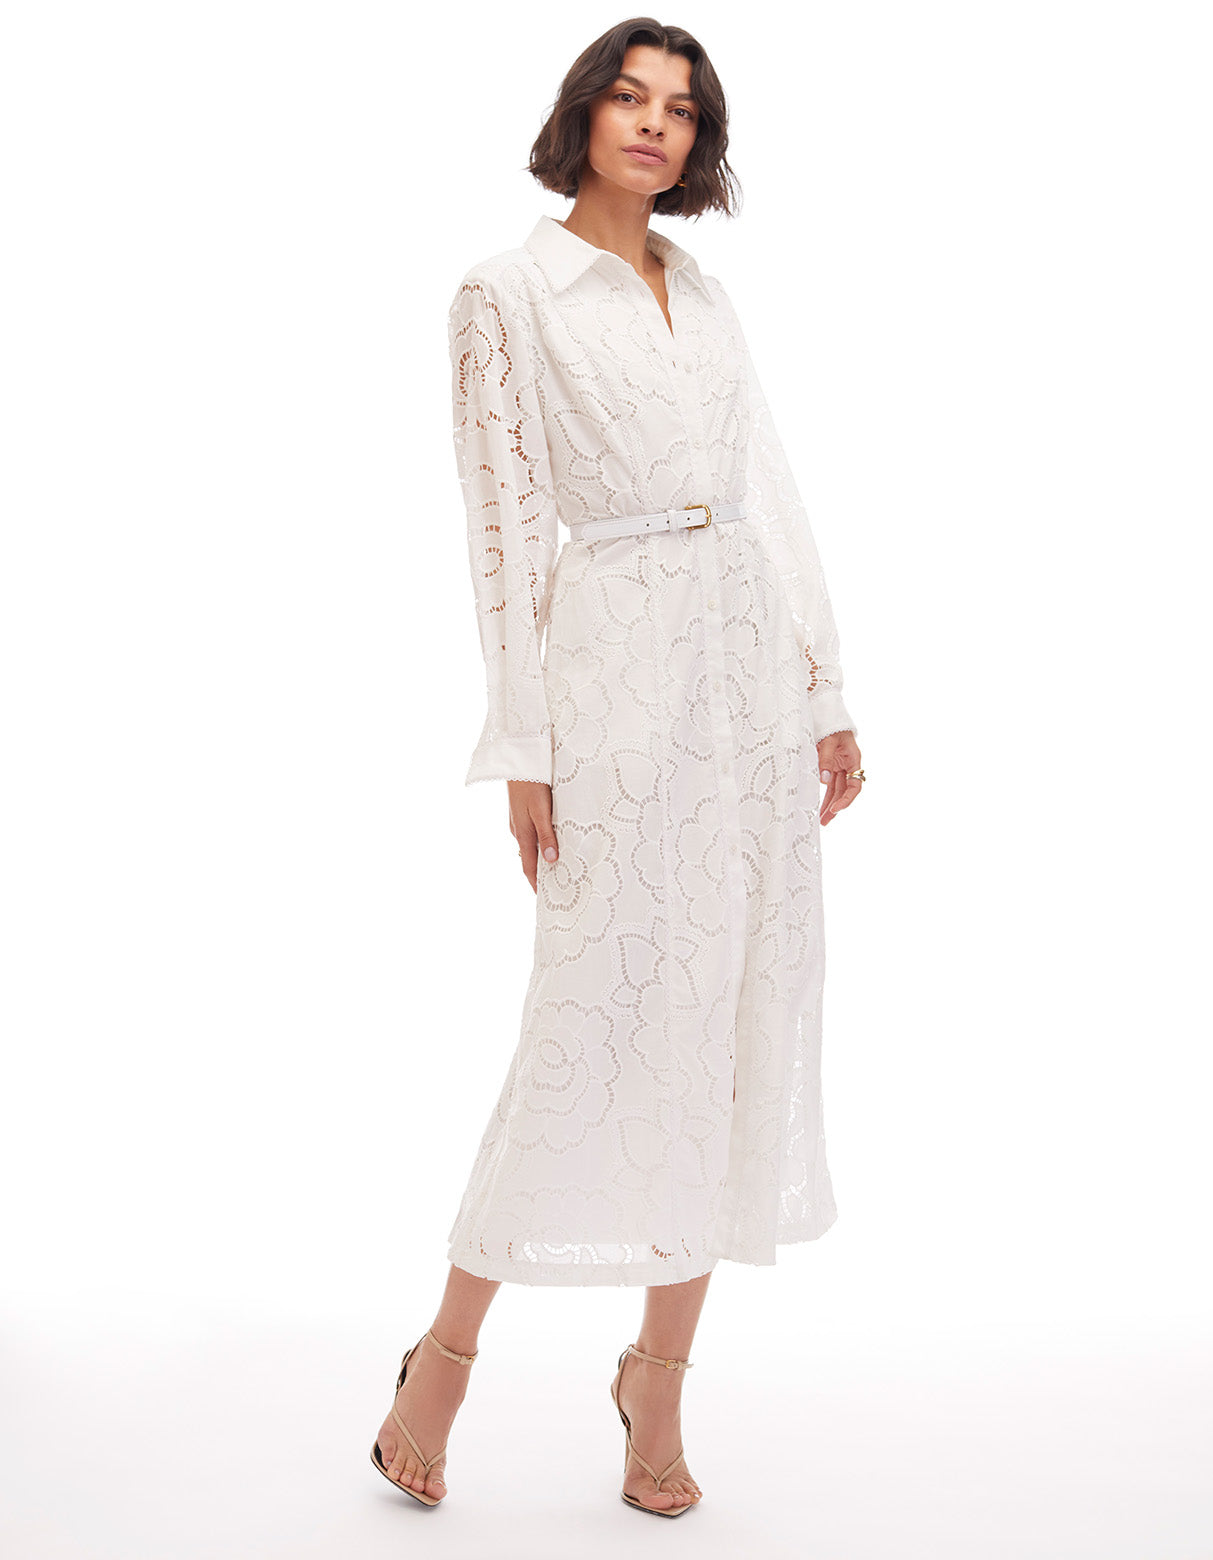 ivy optic white long sleeve eyelet lined shirt midi dress - figure flattering work appropriate designer dresses for women